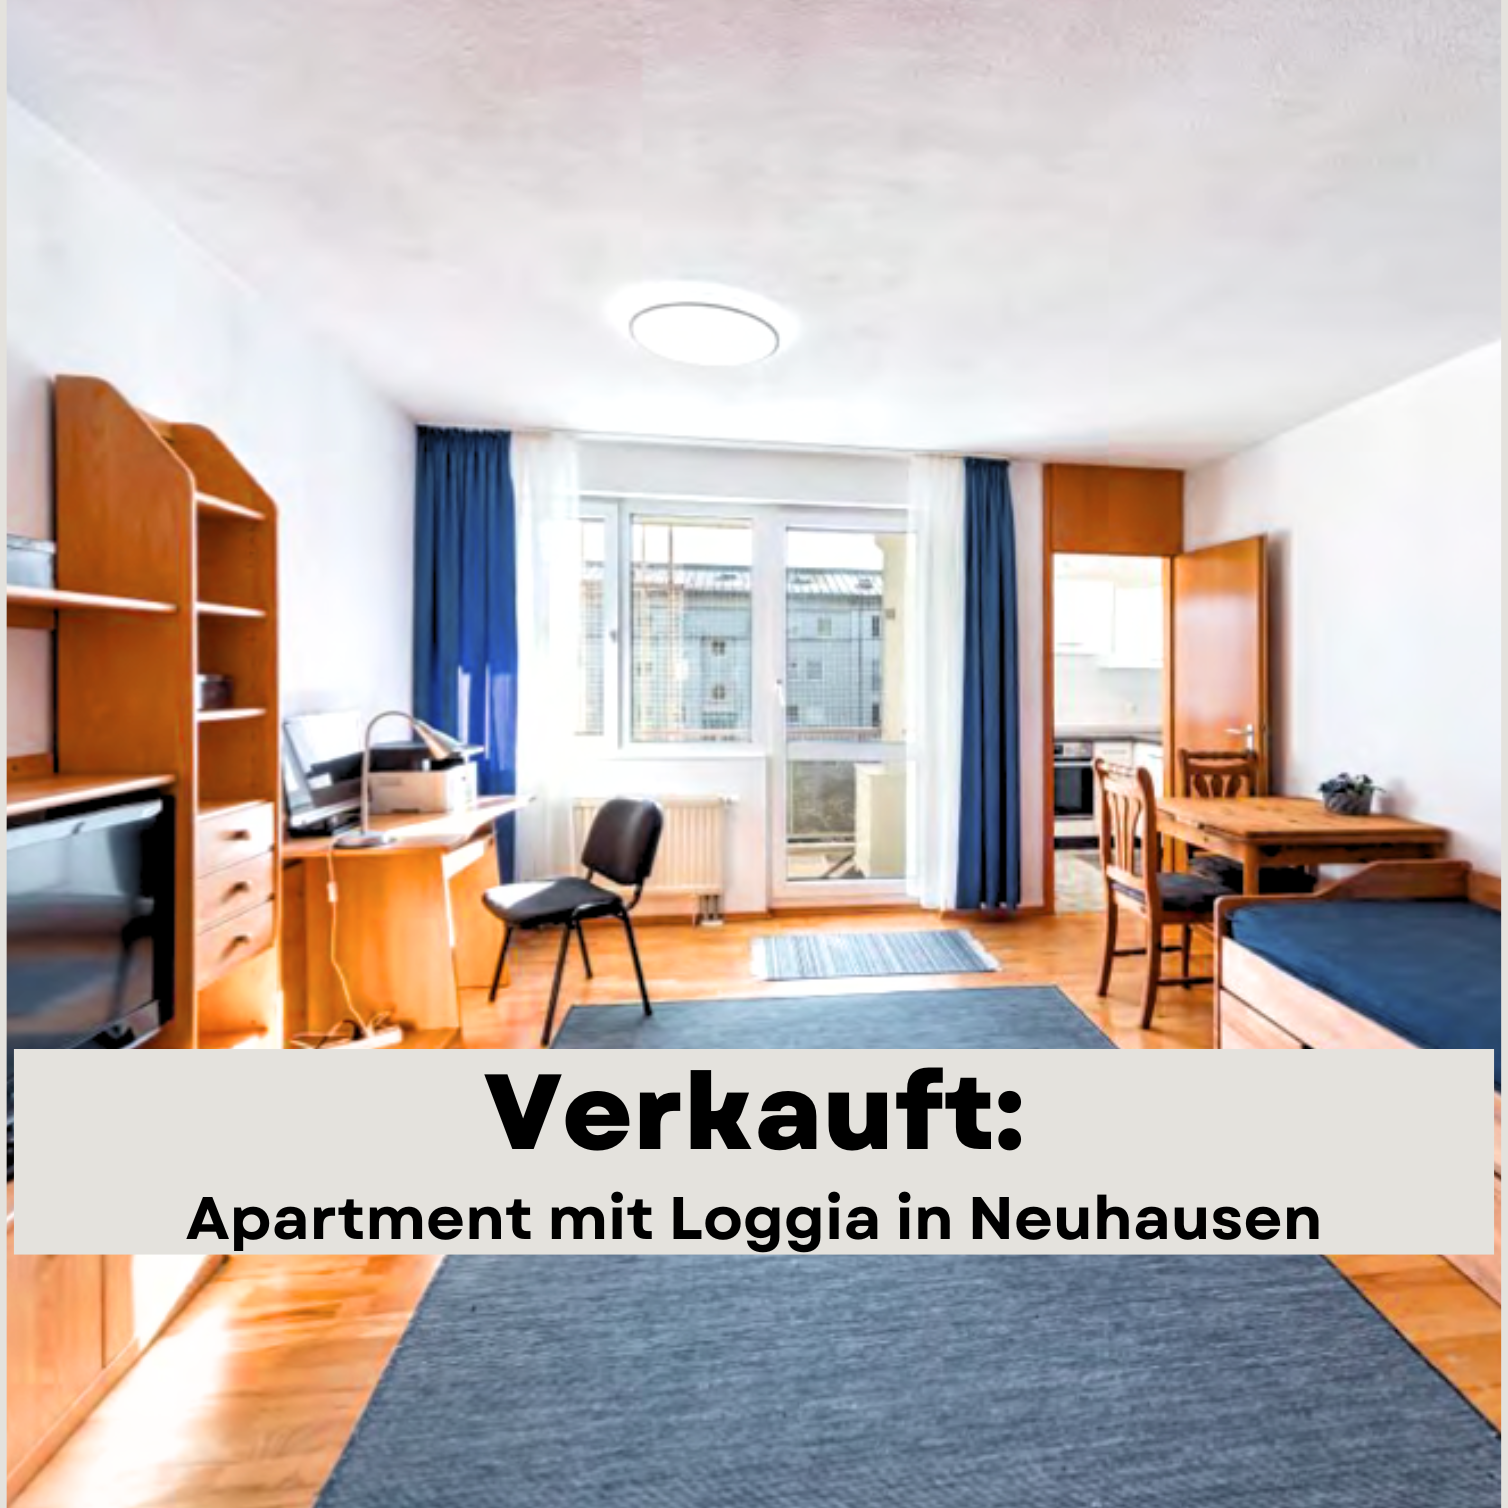 verkauft neuhausen apartment mit loggia münchen wandl.immobilien immobilienmakler immobilie